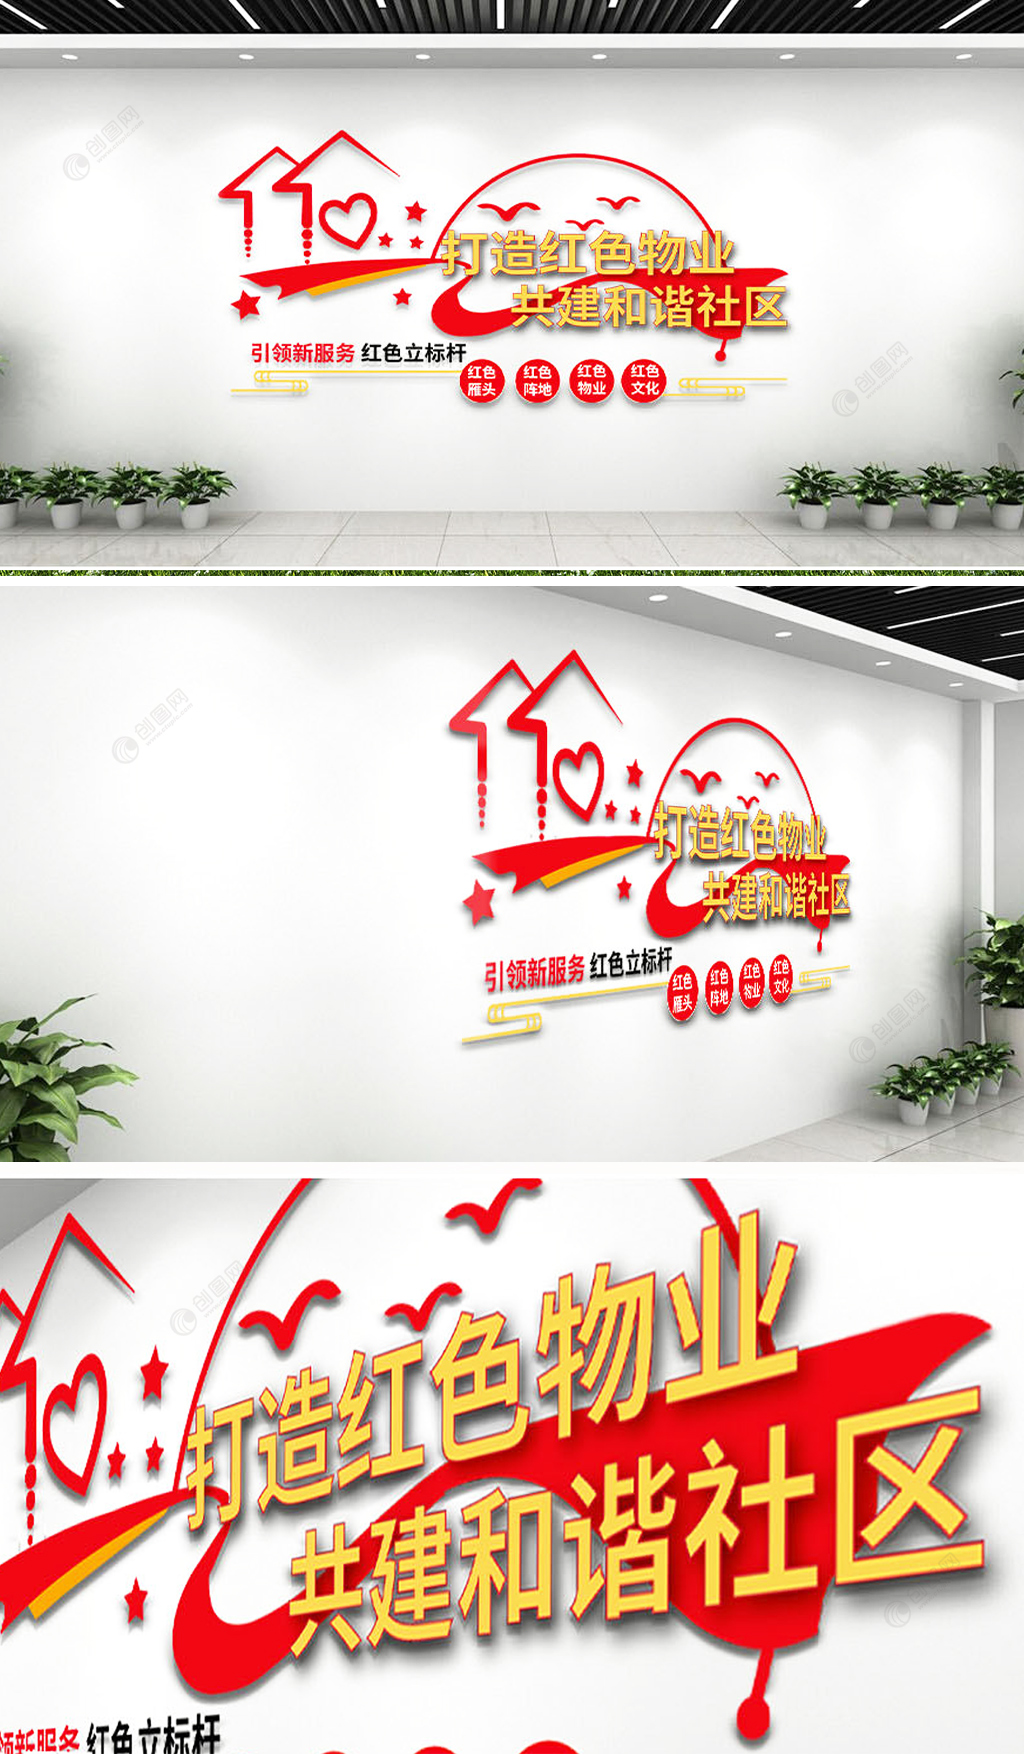 红色物业和谐社区保安公司企业文化墙设计